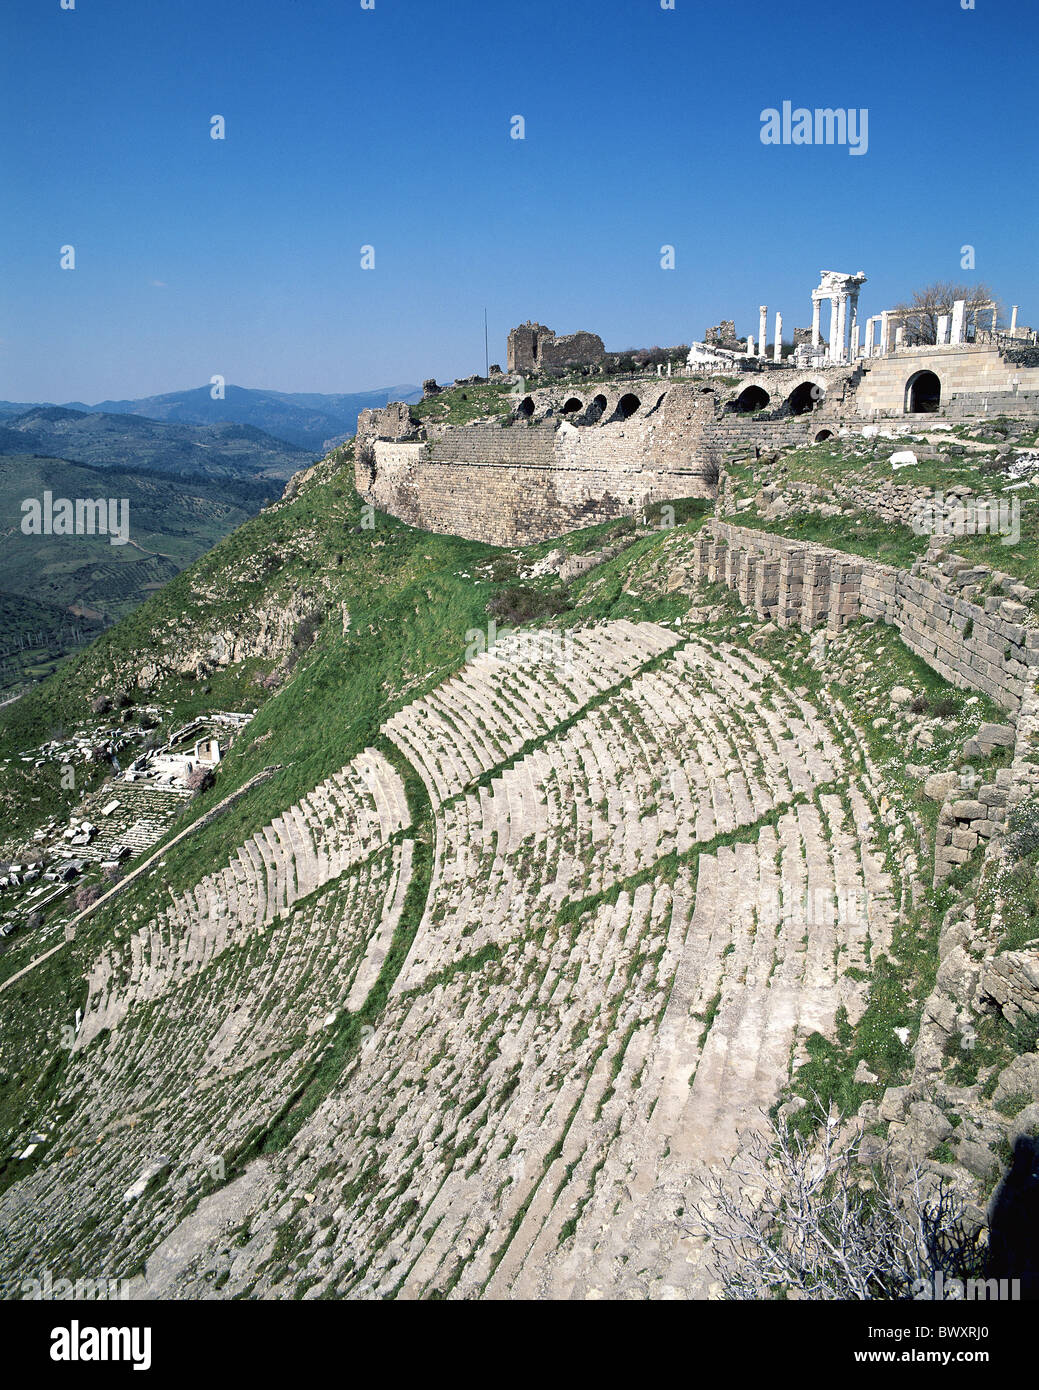 La culture grecque dans la colline de Pergame monde antique antiquité ruines antiques cinémas Turquie Banque D'Images